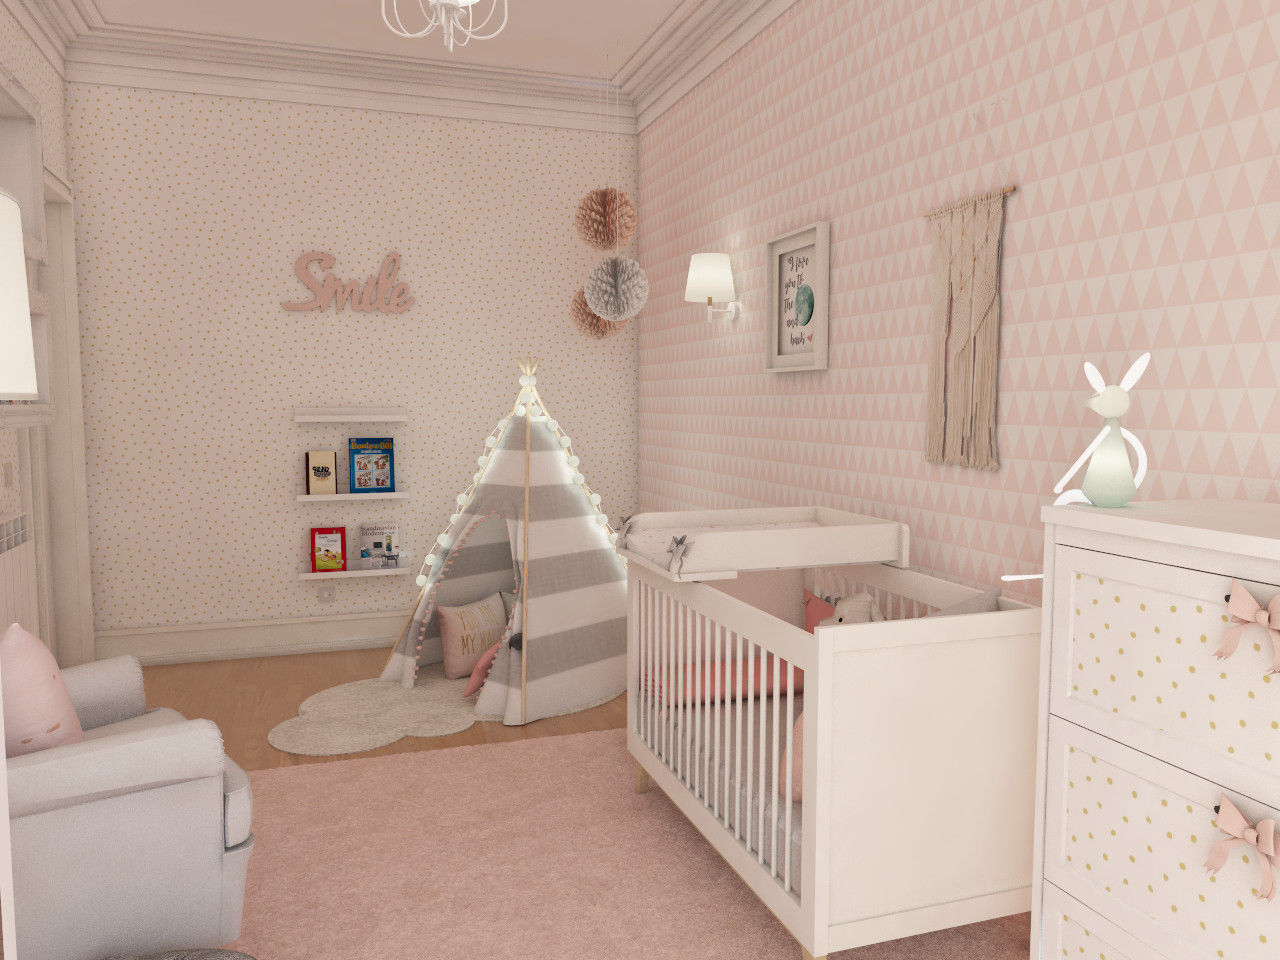 Projeto tranquilo de decoração de quarto de bebé , The Spacealist - Arquitectura e Interiores The Spacealist - Arquitectura e Interiores ห้องเด็กอ่อน